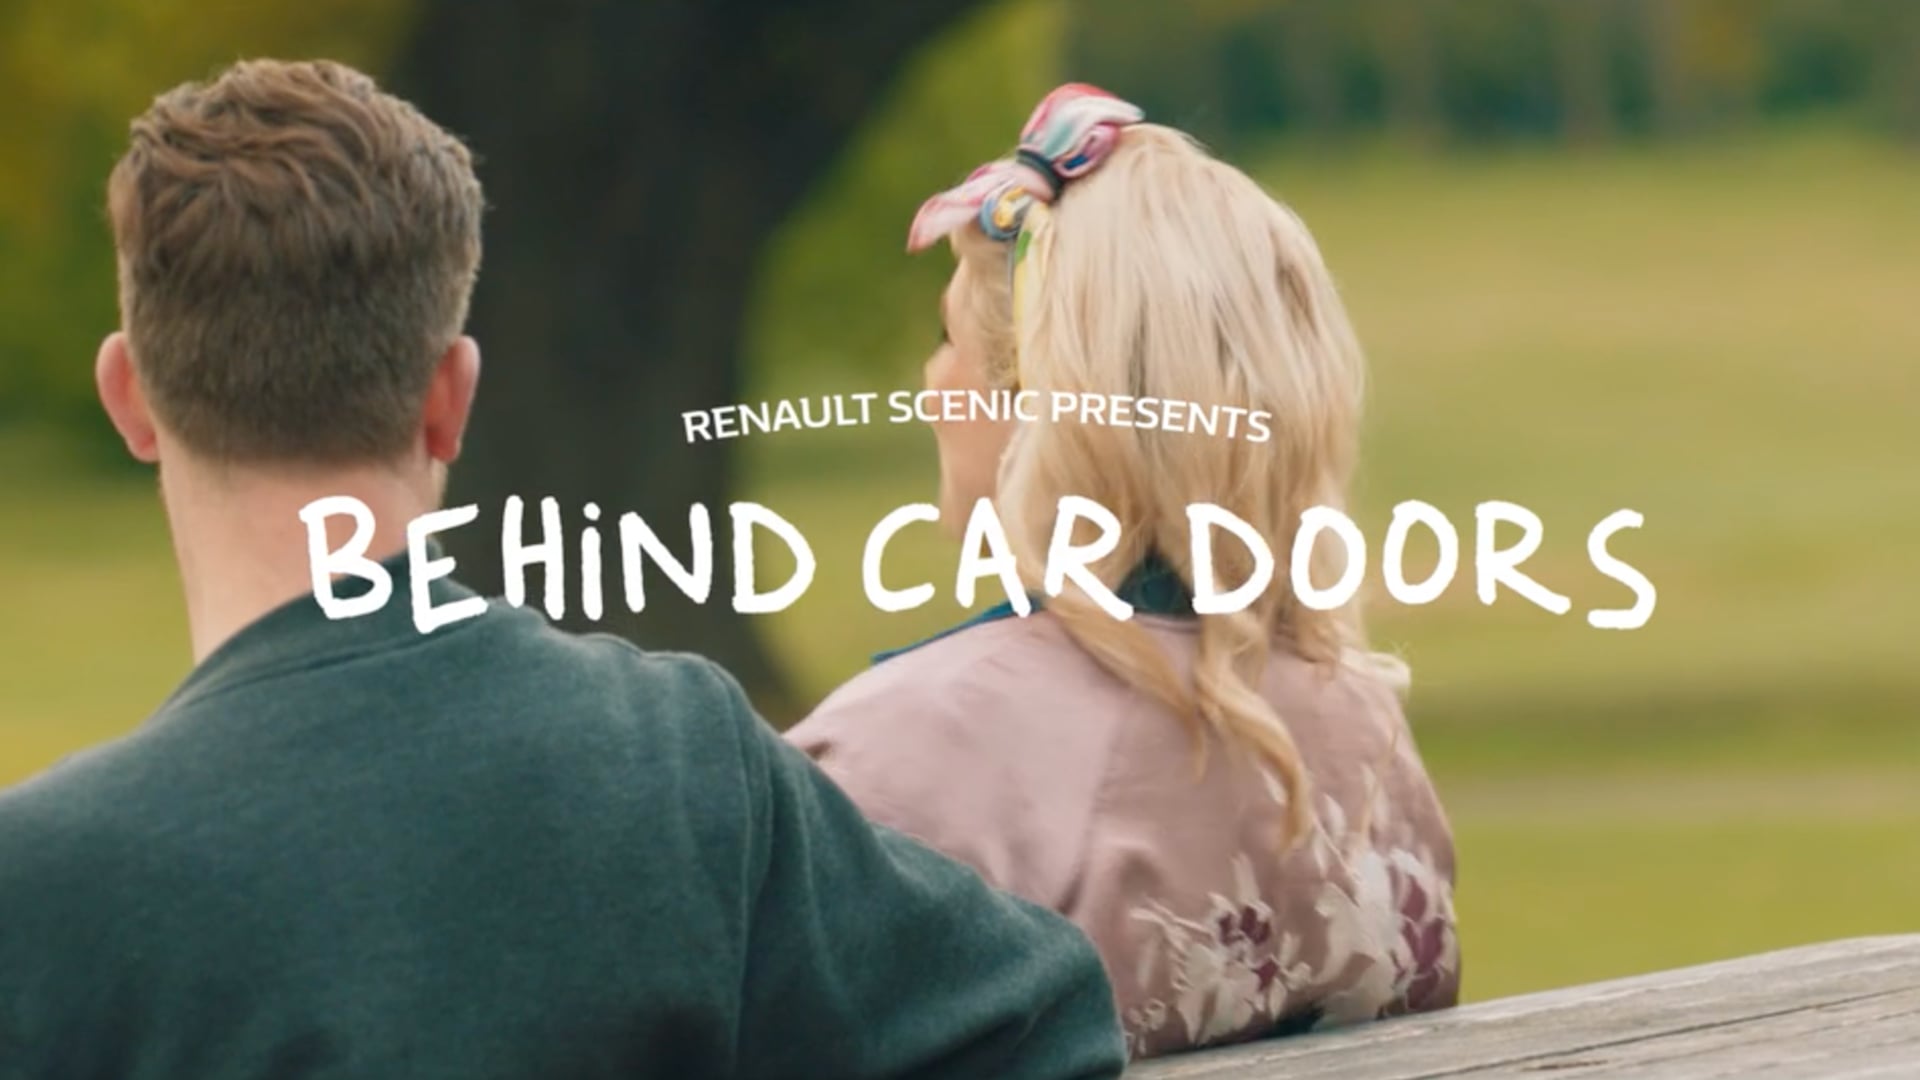 RENAULT - Behind Car Doors